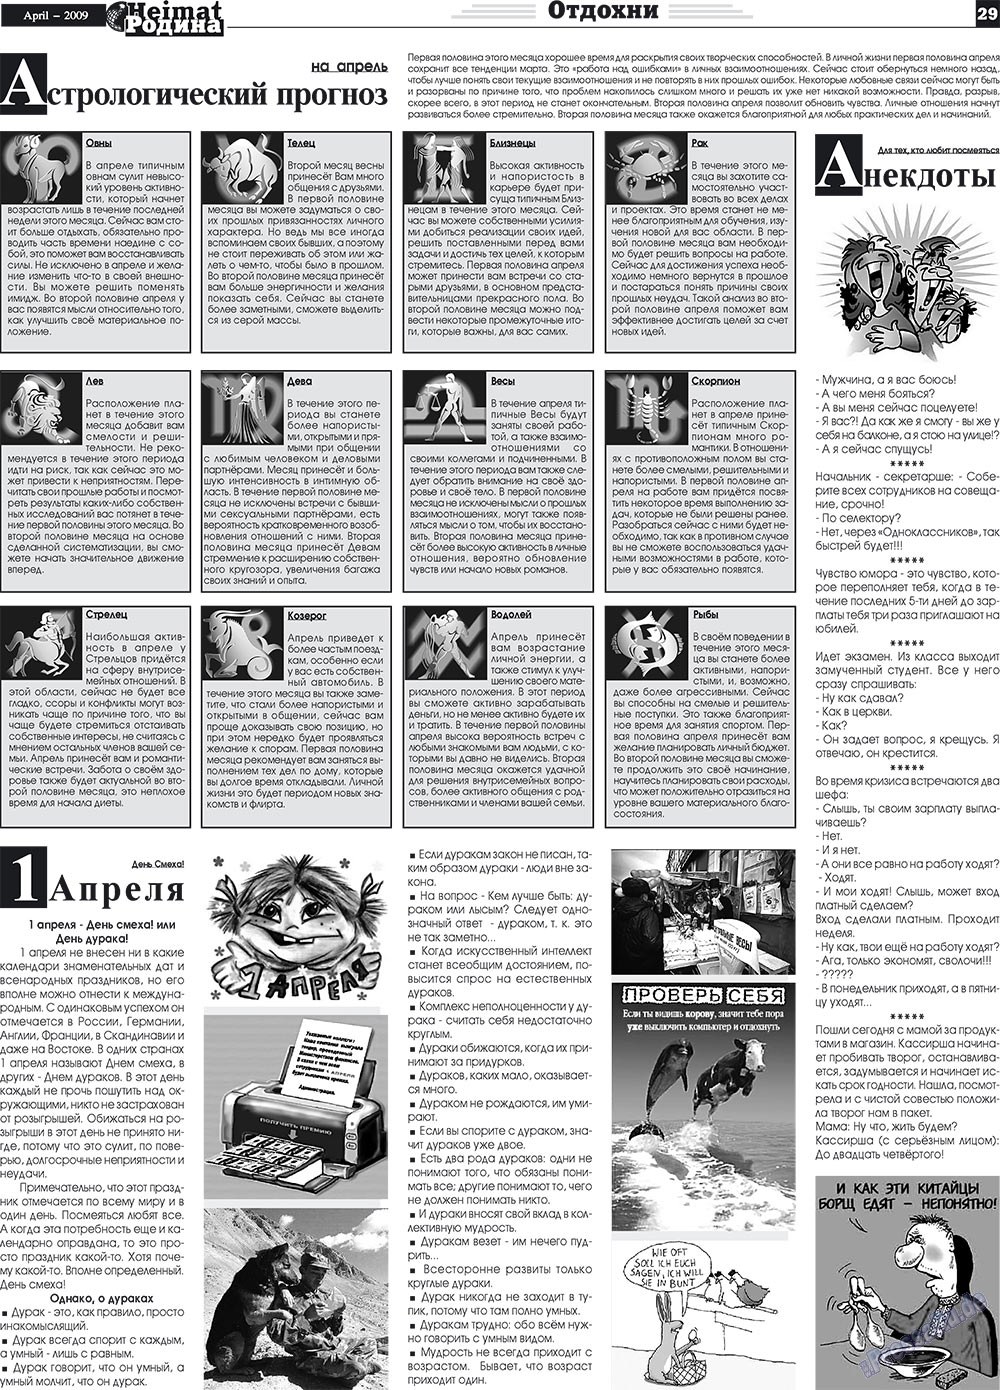 Heimat-Родина (газета). 2009 год, номер 4, стр. 29